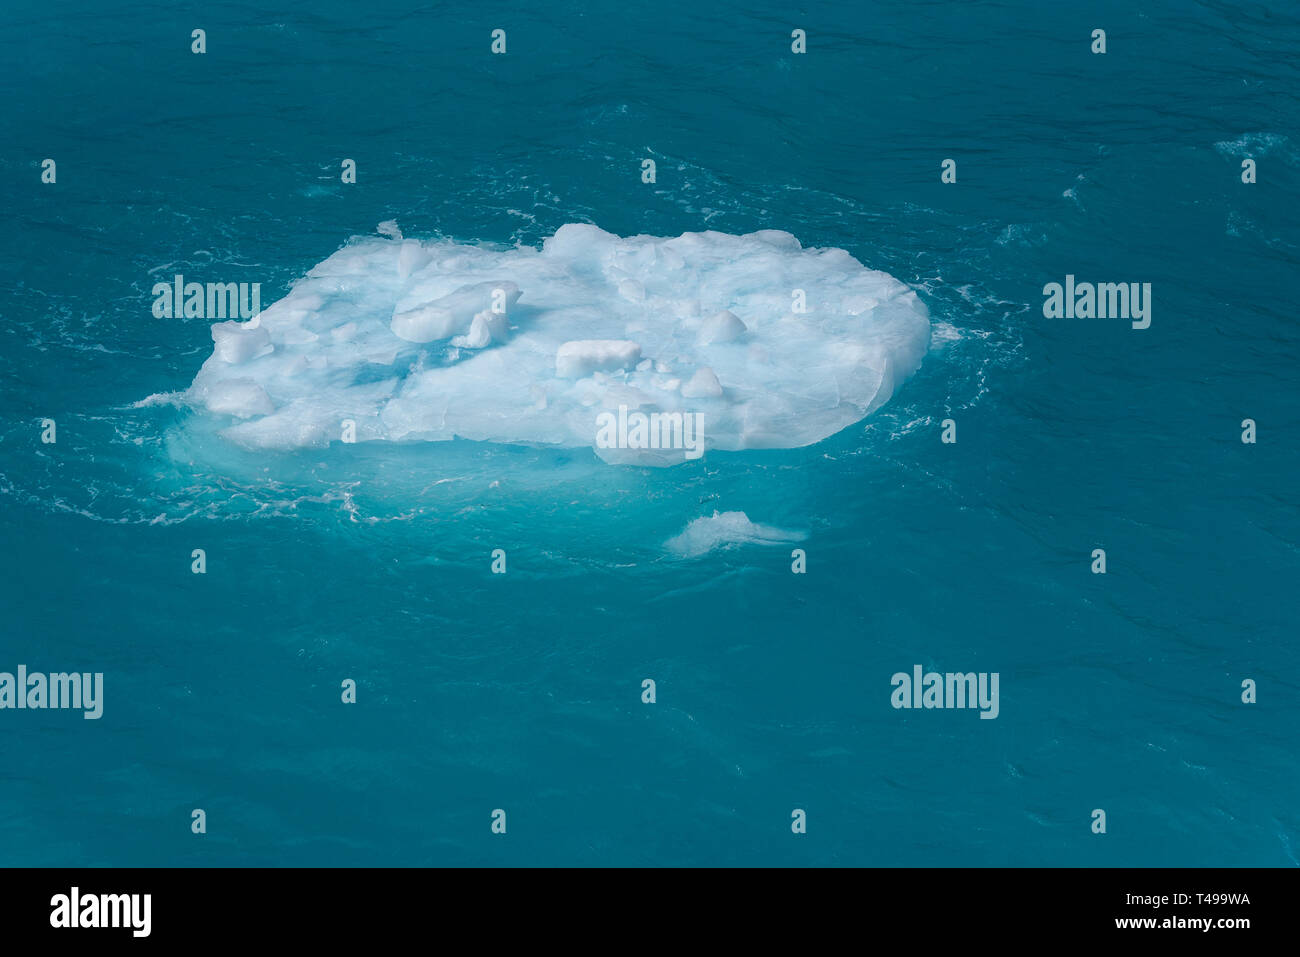 Schönen Meer aquamarinen und Blues mit einem kleinen schwimmenden Eisberg als Natur Hintergrund Stockfoto